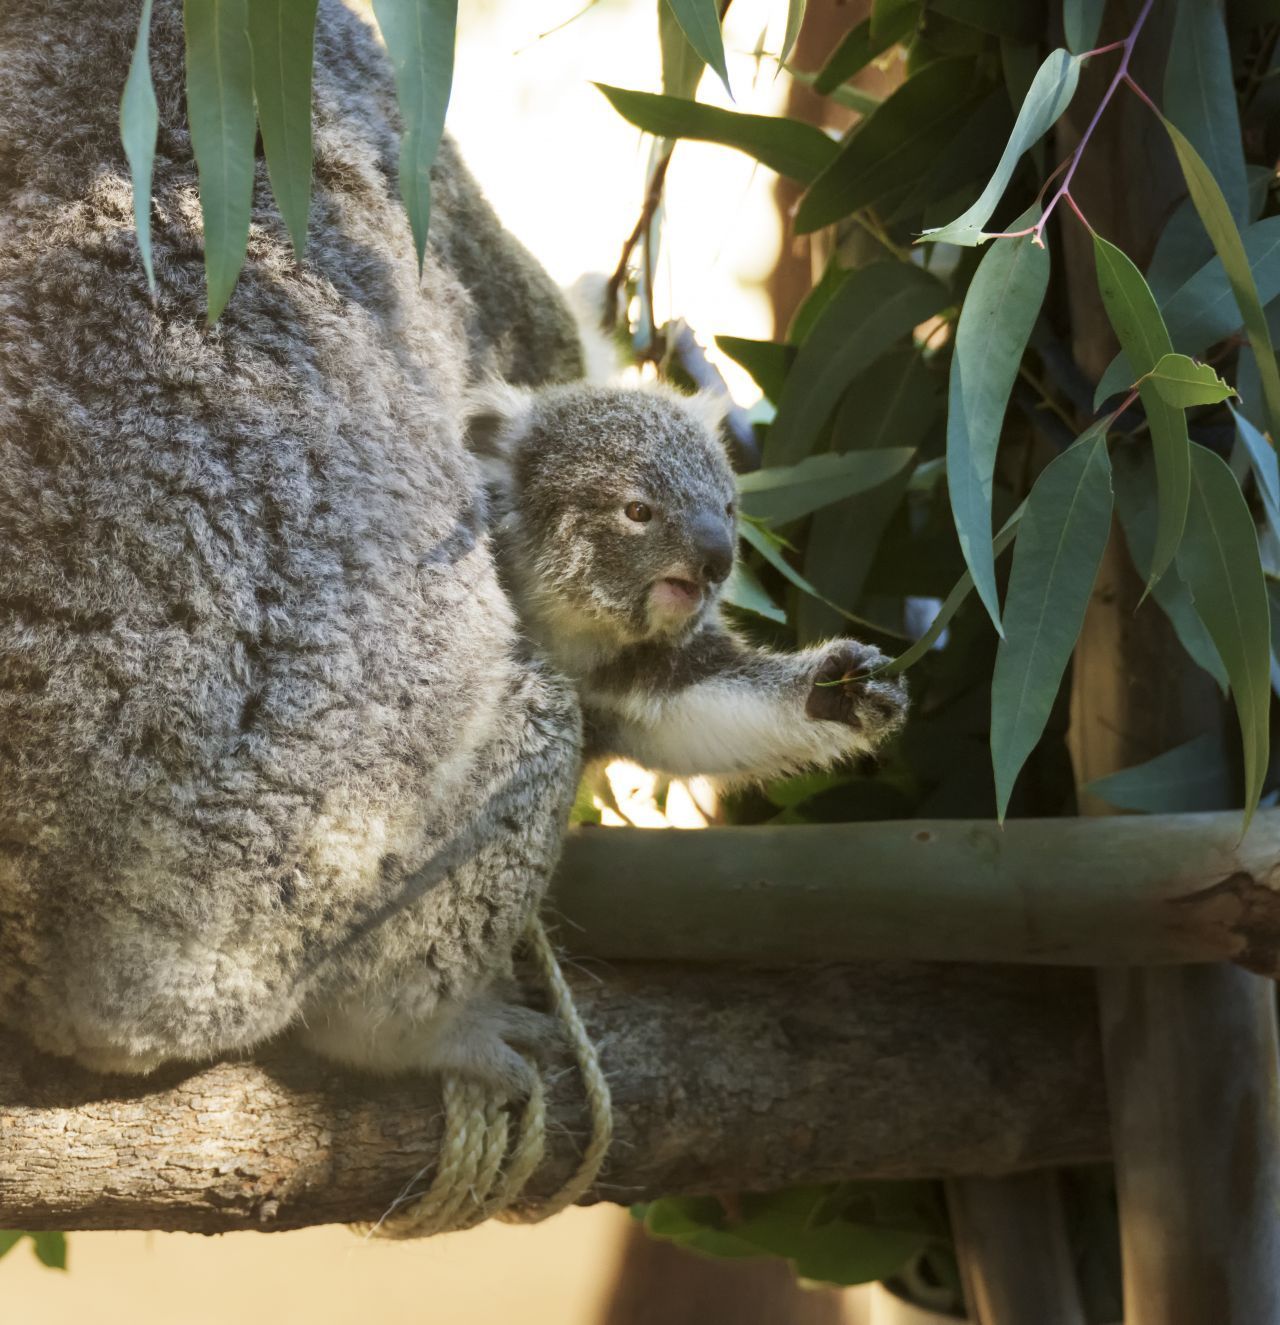 DIY-Geburt: Nach 35 Tagen Tragzeit krabbelt das gerade mal 2 Zentimeter kleine Koala-Baby aus dem Geburtskanal in den Koala-Beutel. Ein großer Schließmuskel sorgt dafür, dass das Kleine nicht rausfällt.